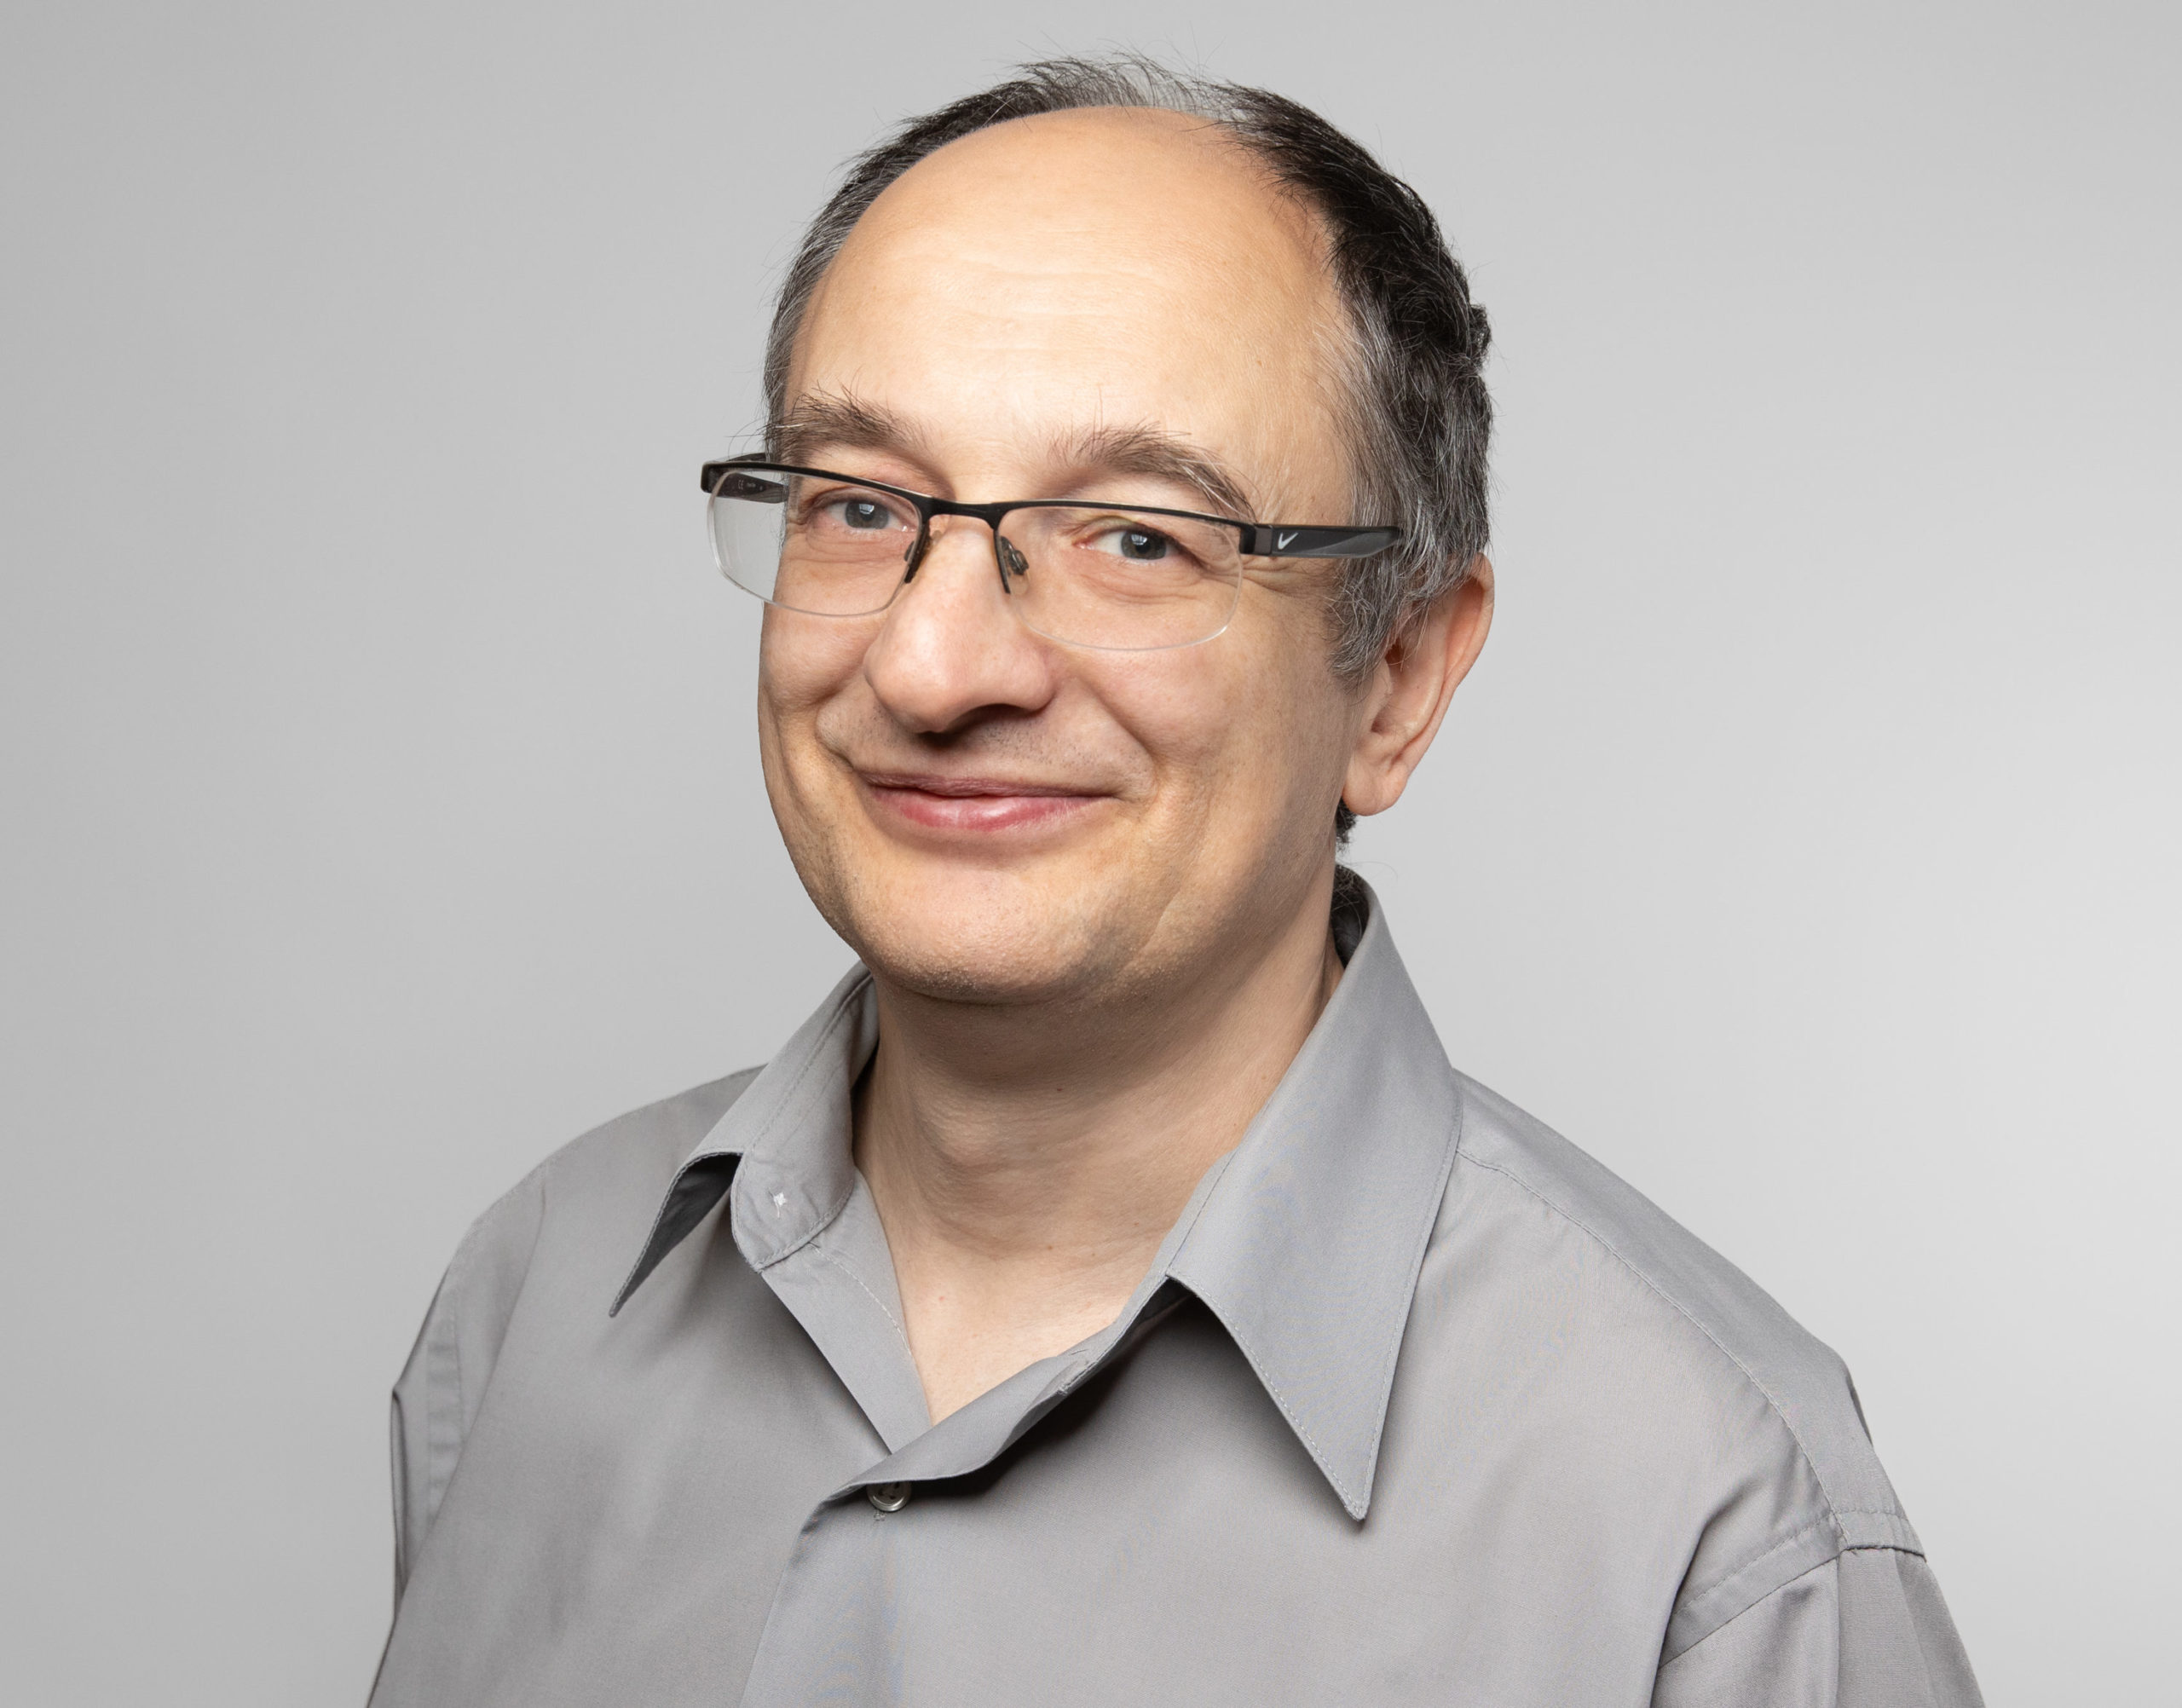 Stefan Kirov, Ph.D.